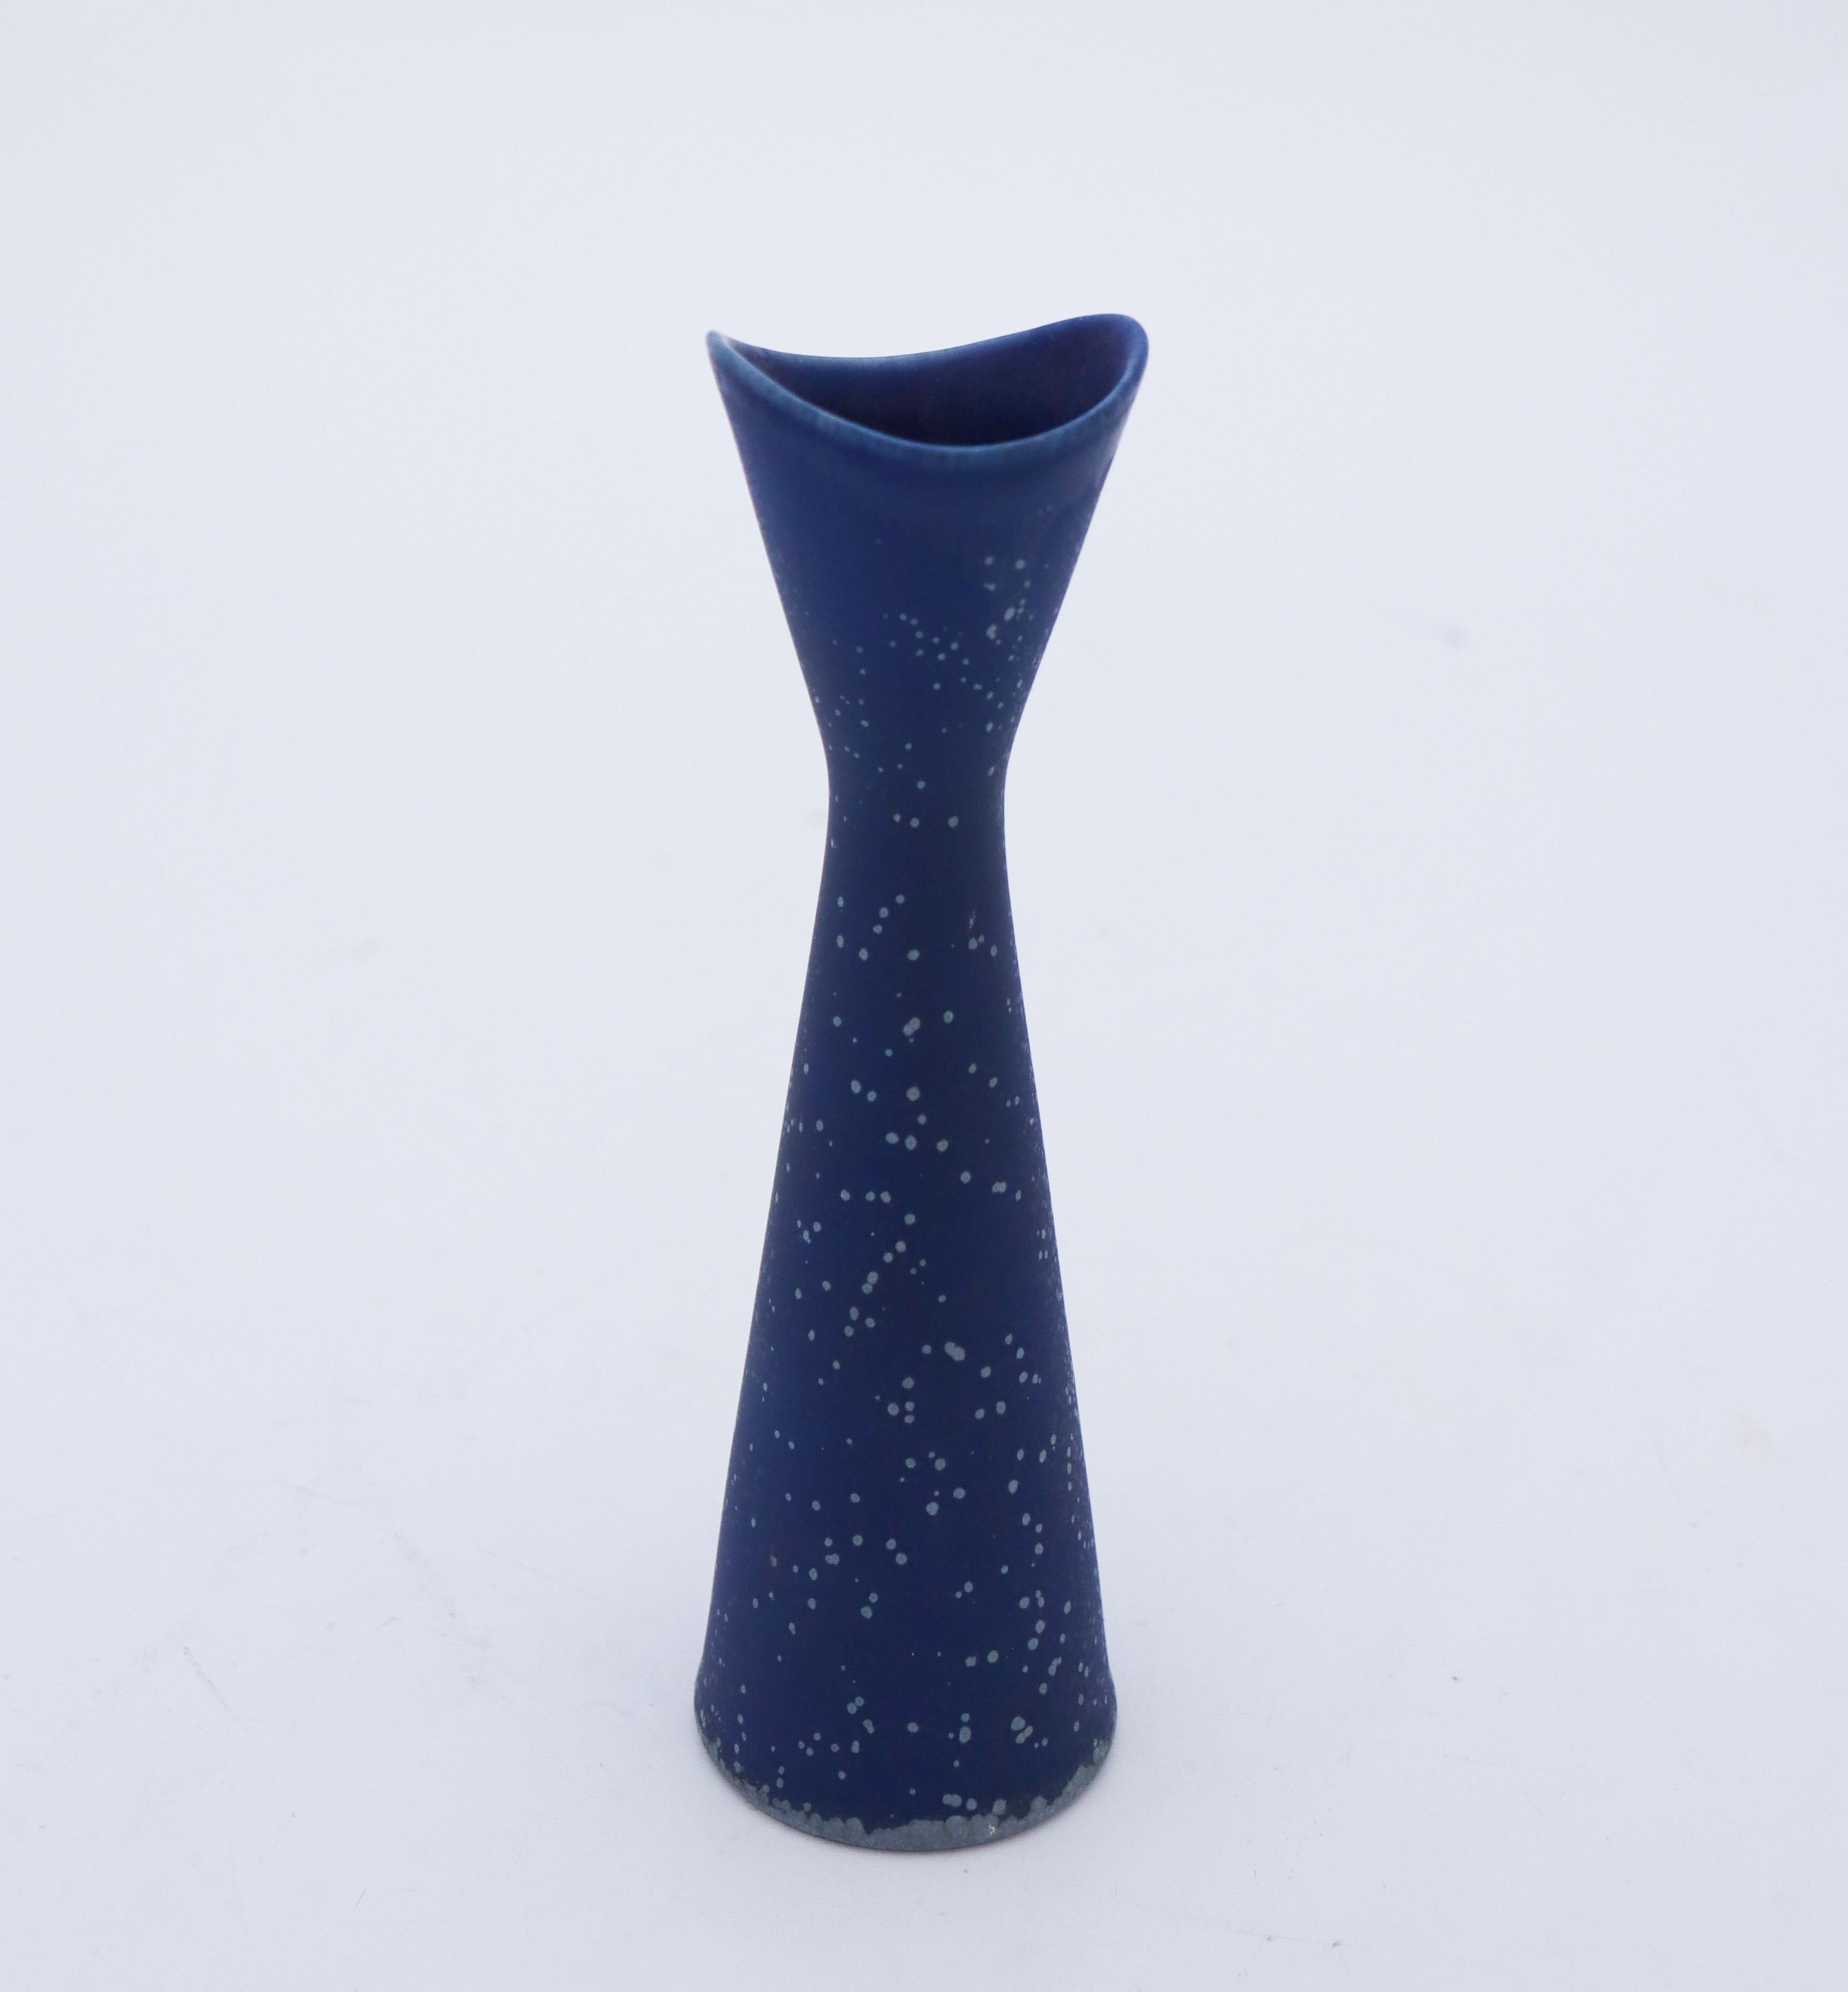 Un joli vase bleu conçu par Gunnar Nylund chez Nymölle au Danemark dans les années 1960, il mesure 17,5 cm (7) de haut. Il est en parfait état et marqué comme étant de qualité 1:st. 

Gunnar Nylund est né à Paris en 1904 de parents qui